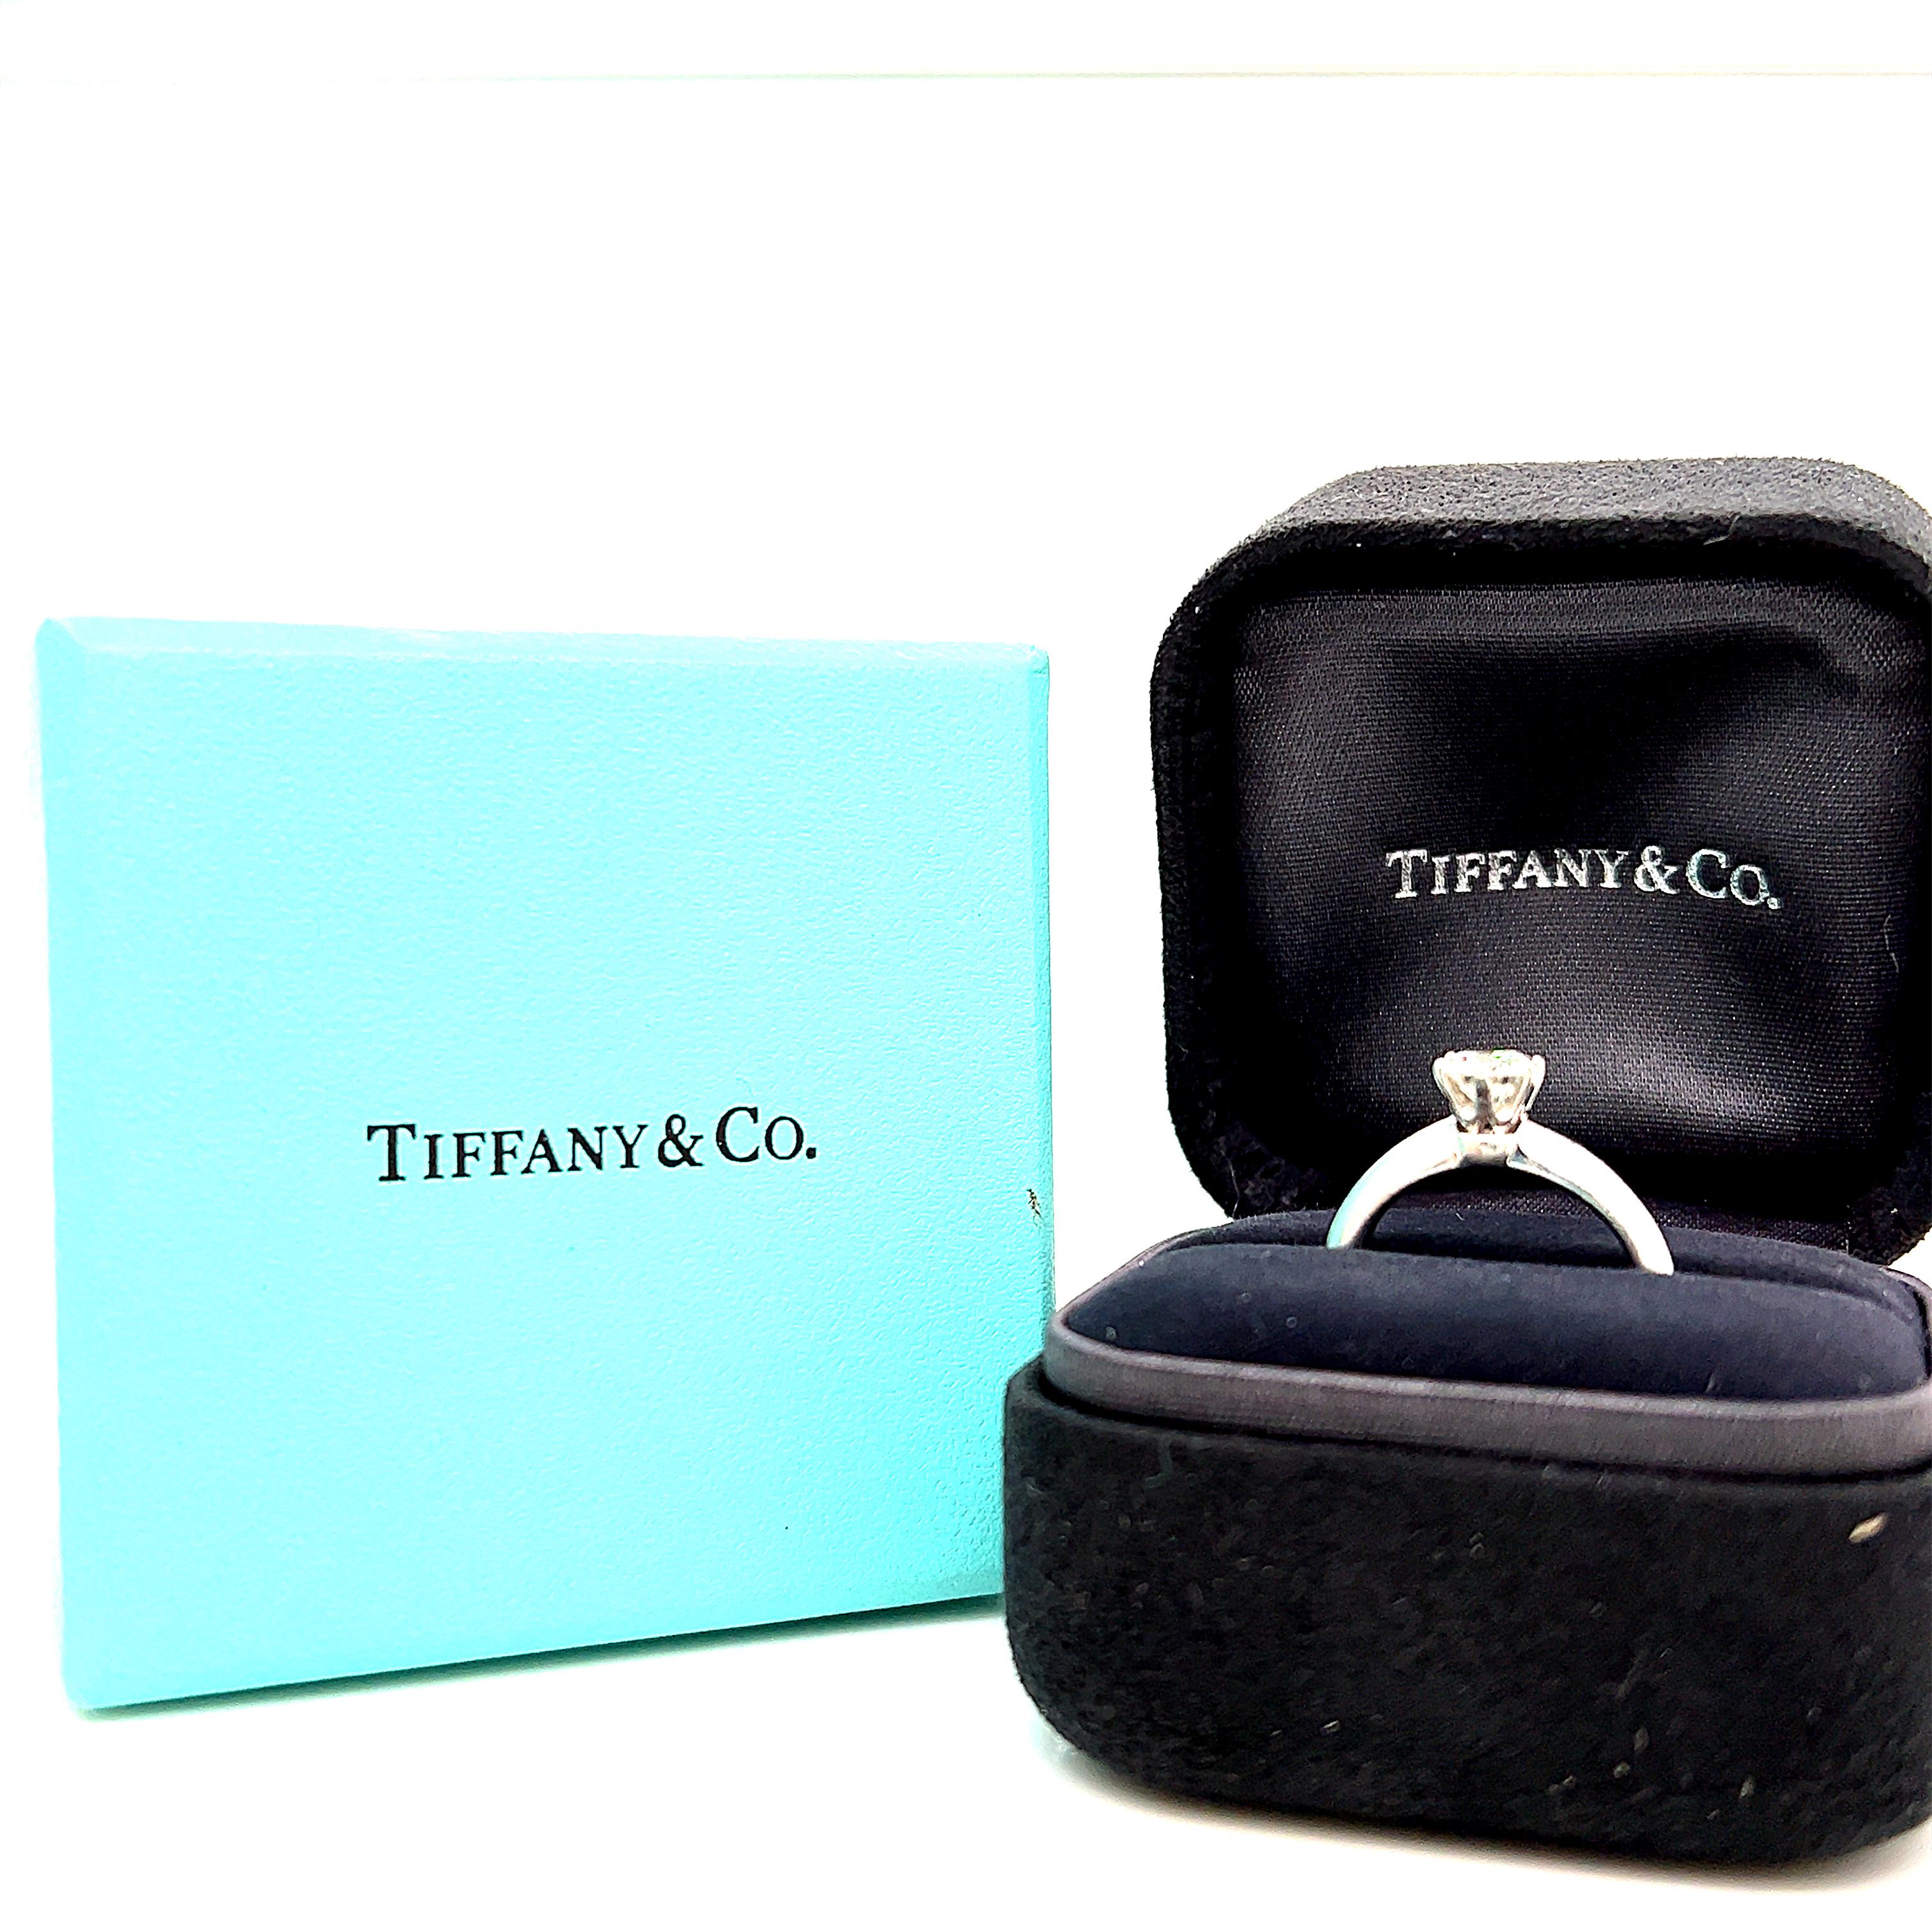 Véritable chef-d'œuvre de design, la monture Tiffany est la bague de fiançailles la plus emblématique au monde. Parfaitement conçue, la monture à six griffes disparaît pratiquement et permet au diamant brillant de flotter au-dessus de l'anneau et